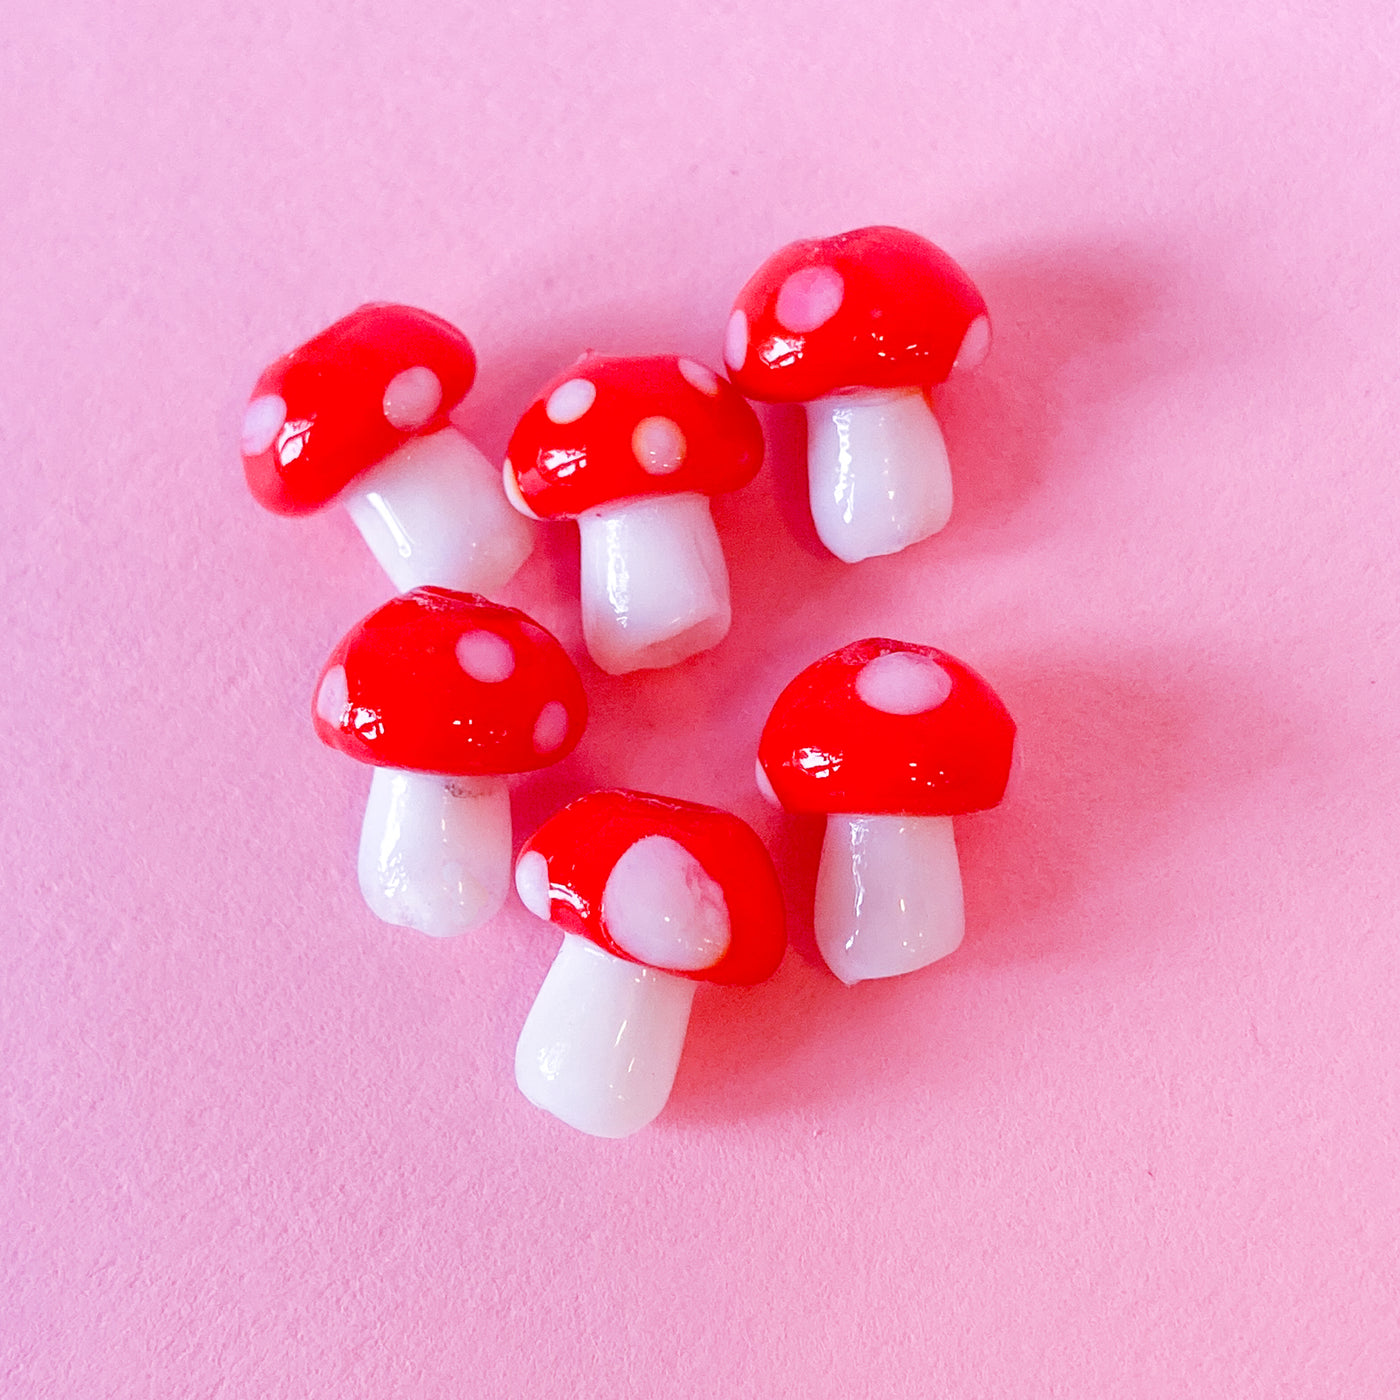 Glass mushroom beads in light red